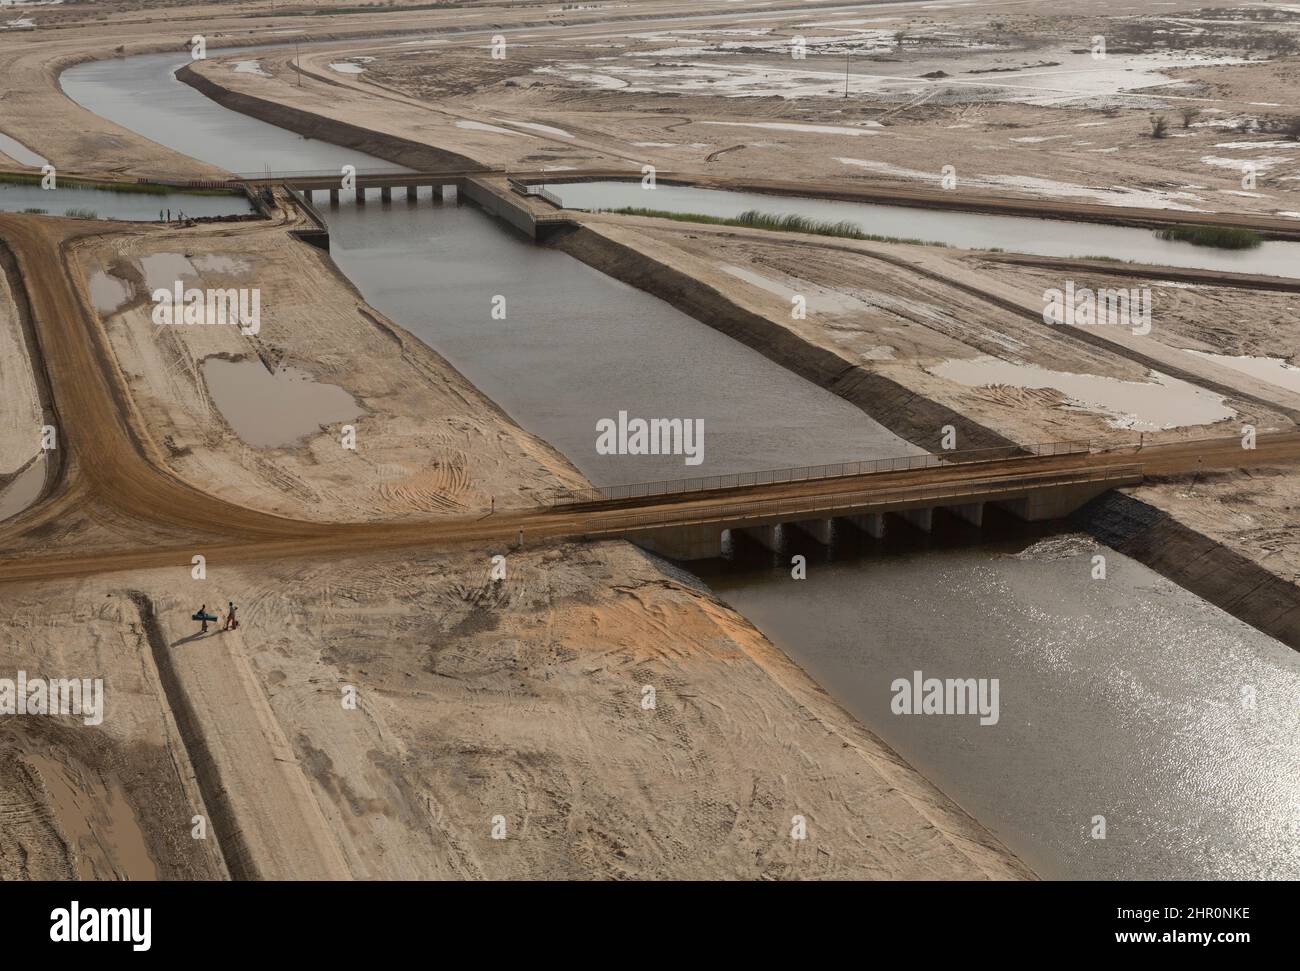 L'amélioration des infrastructures d'irrigation et de transport dans le delta du fleuve Sénégal aide les agriculteurs à irriguer leurs fermes et à commercialiser leurs cultures. Banque D'Images